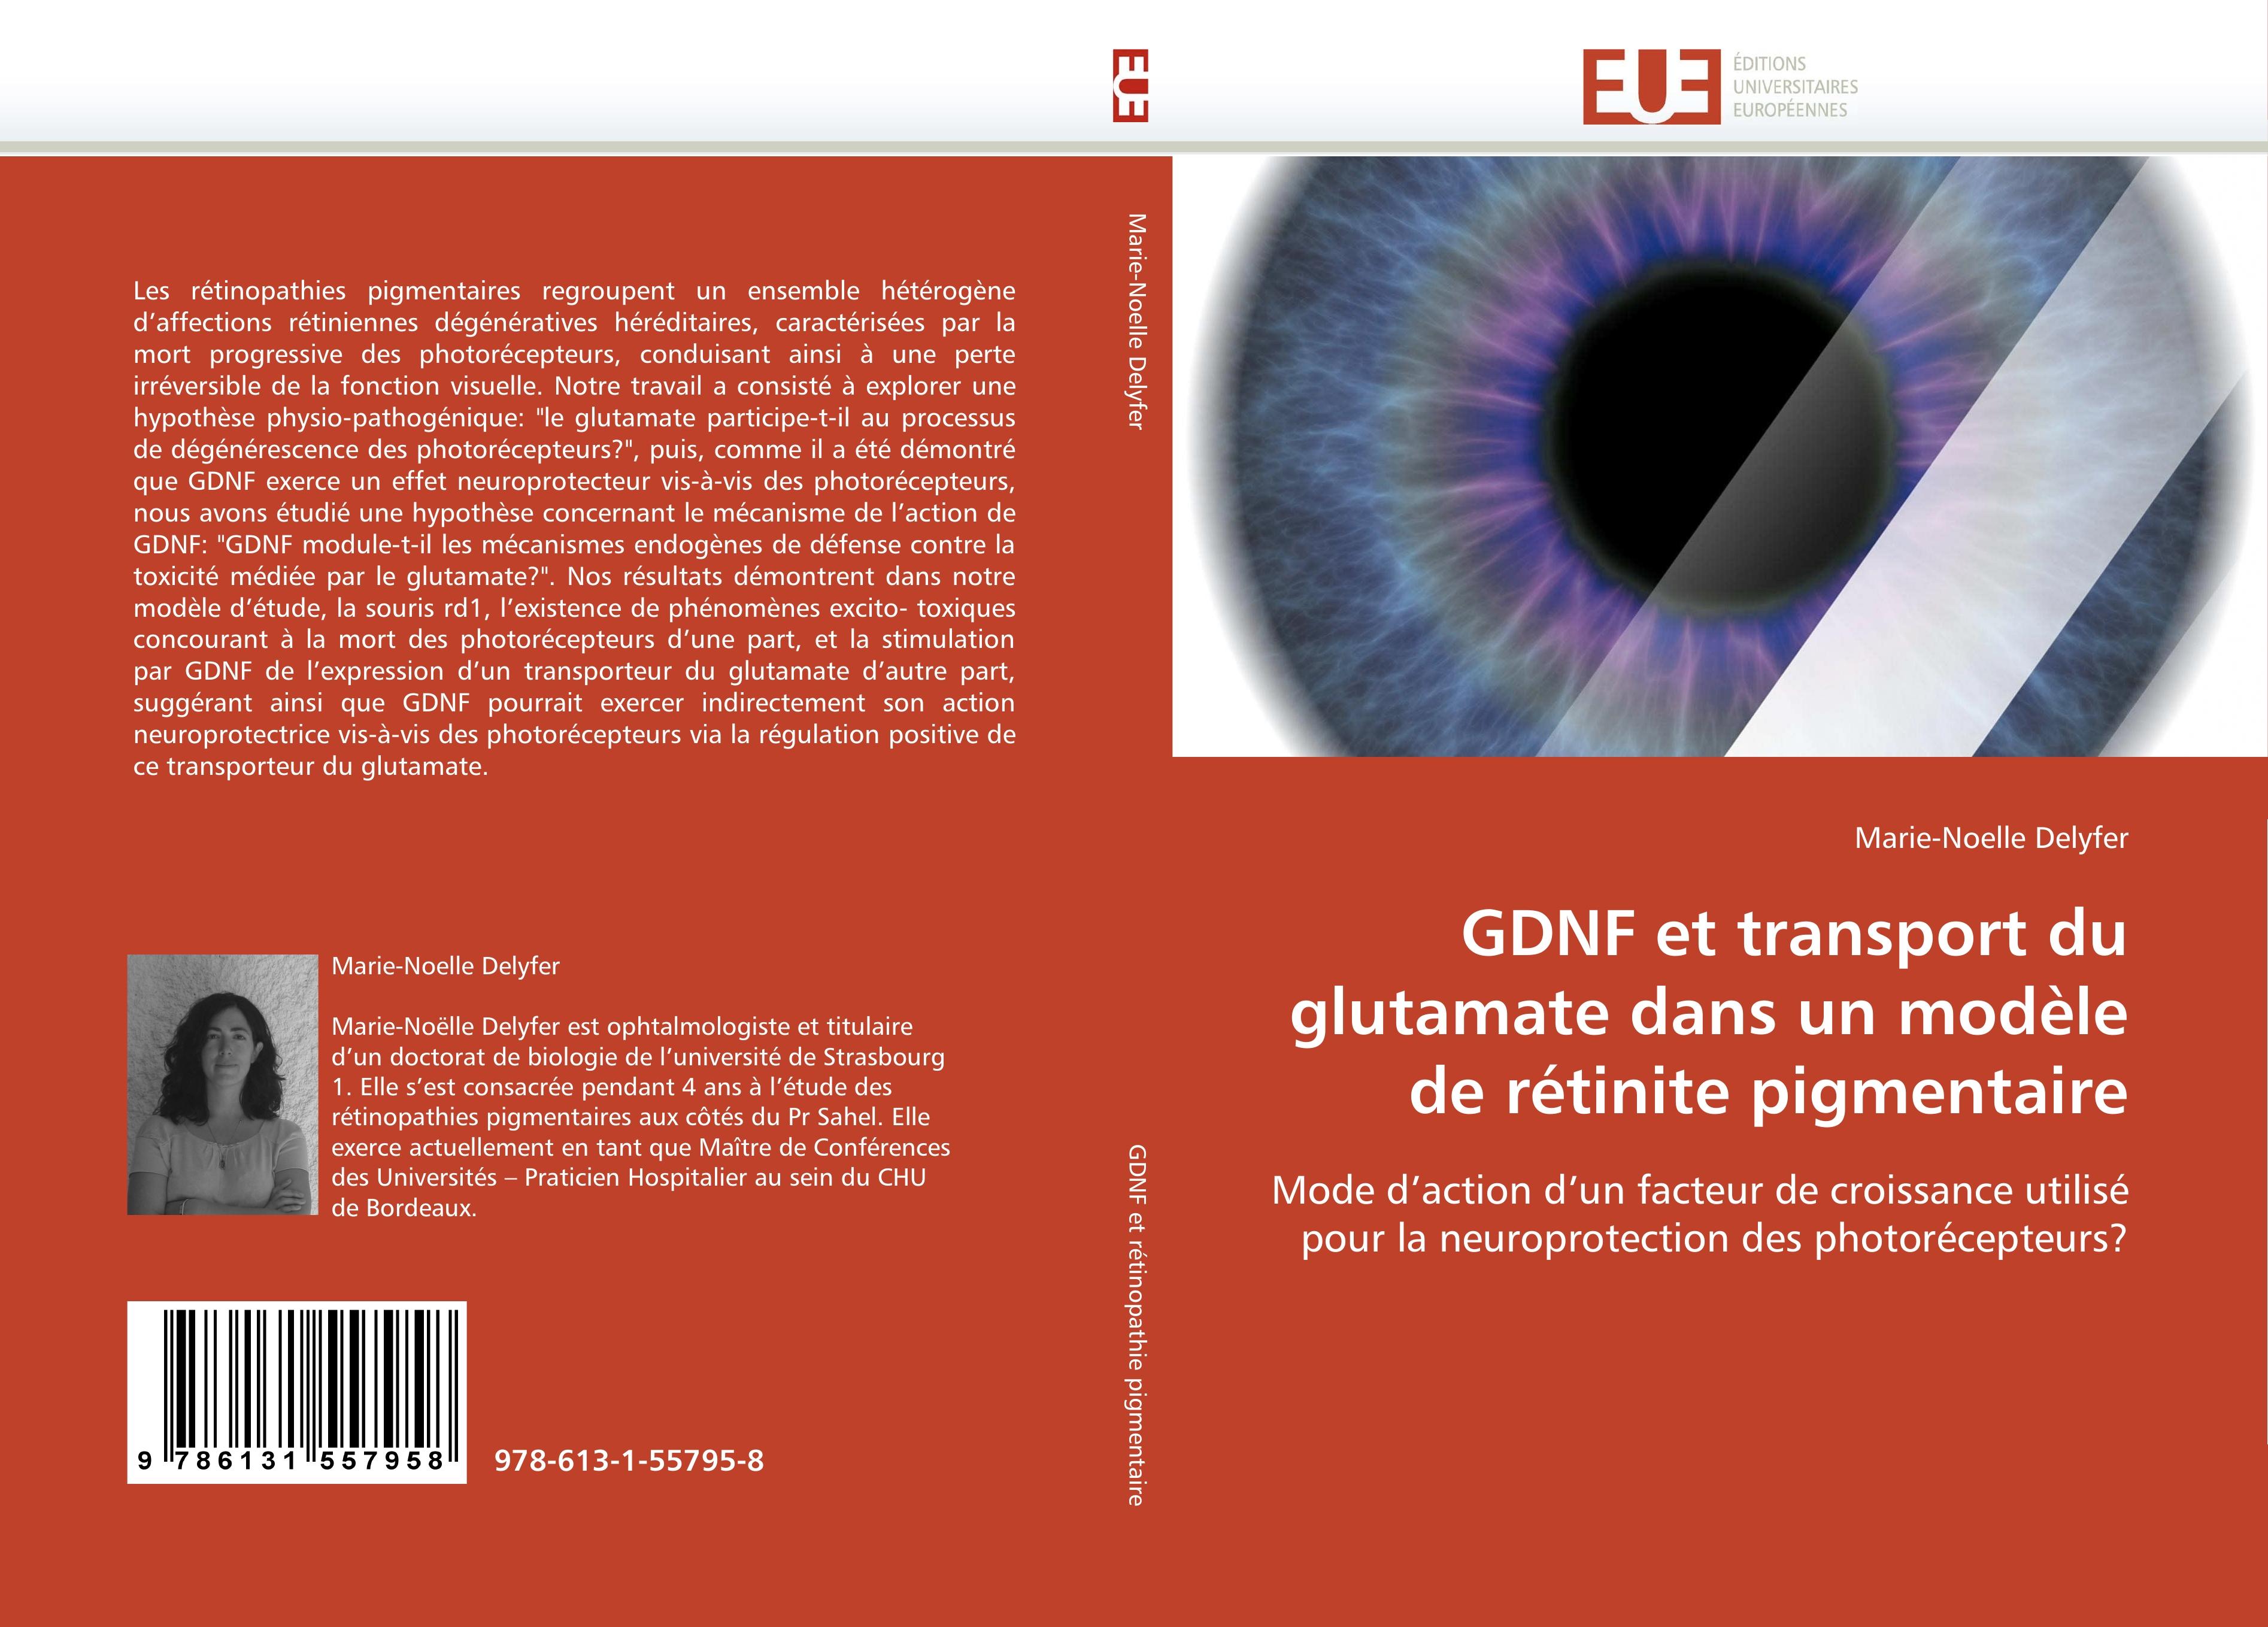 GDNF et transport du glutamate dans un modèle de rétinite pigmentaire - Marie-Noelle Delyfer